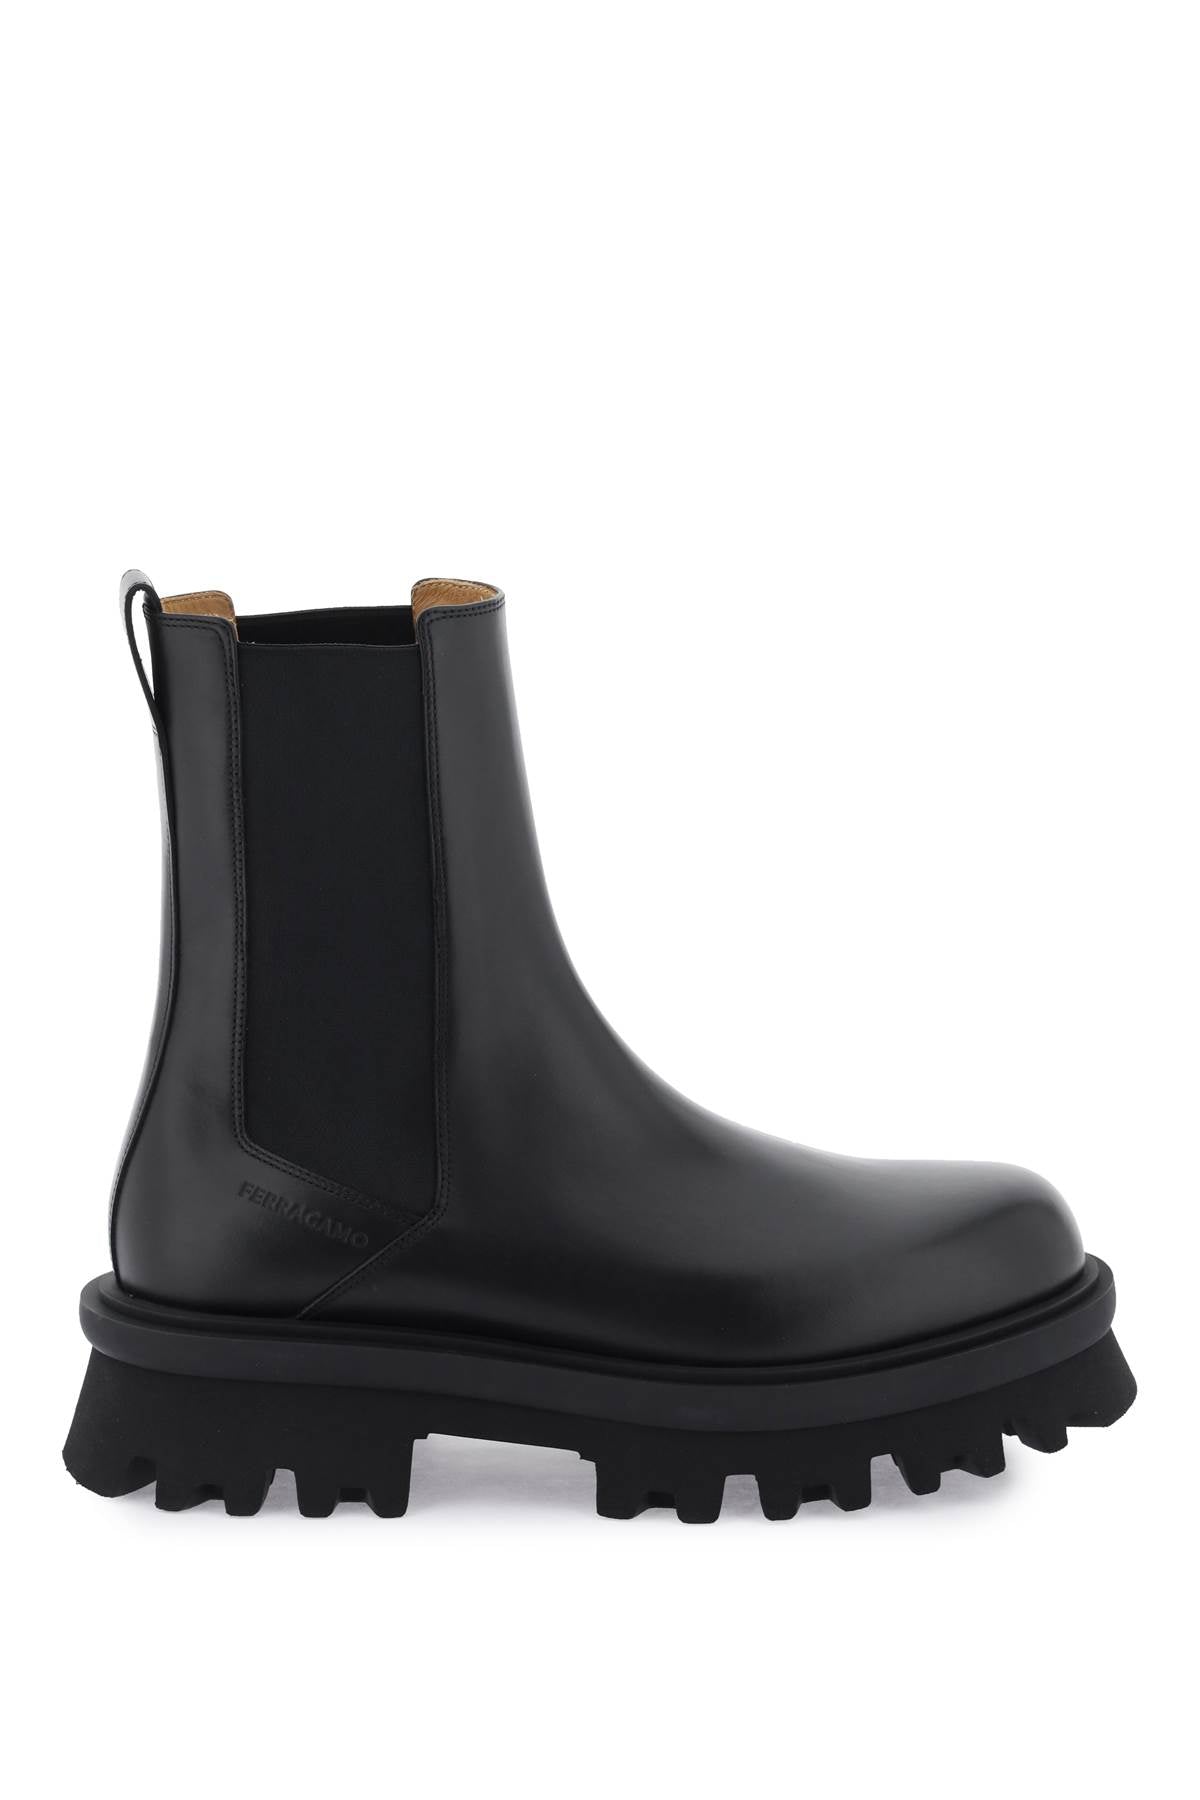 Shop Ferragamo Men's Black Leather Chelsea Boots For Fw23